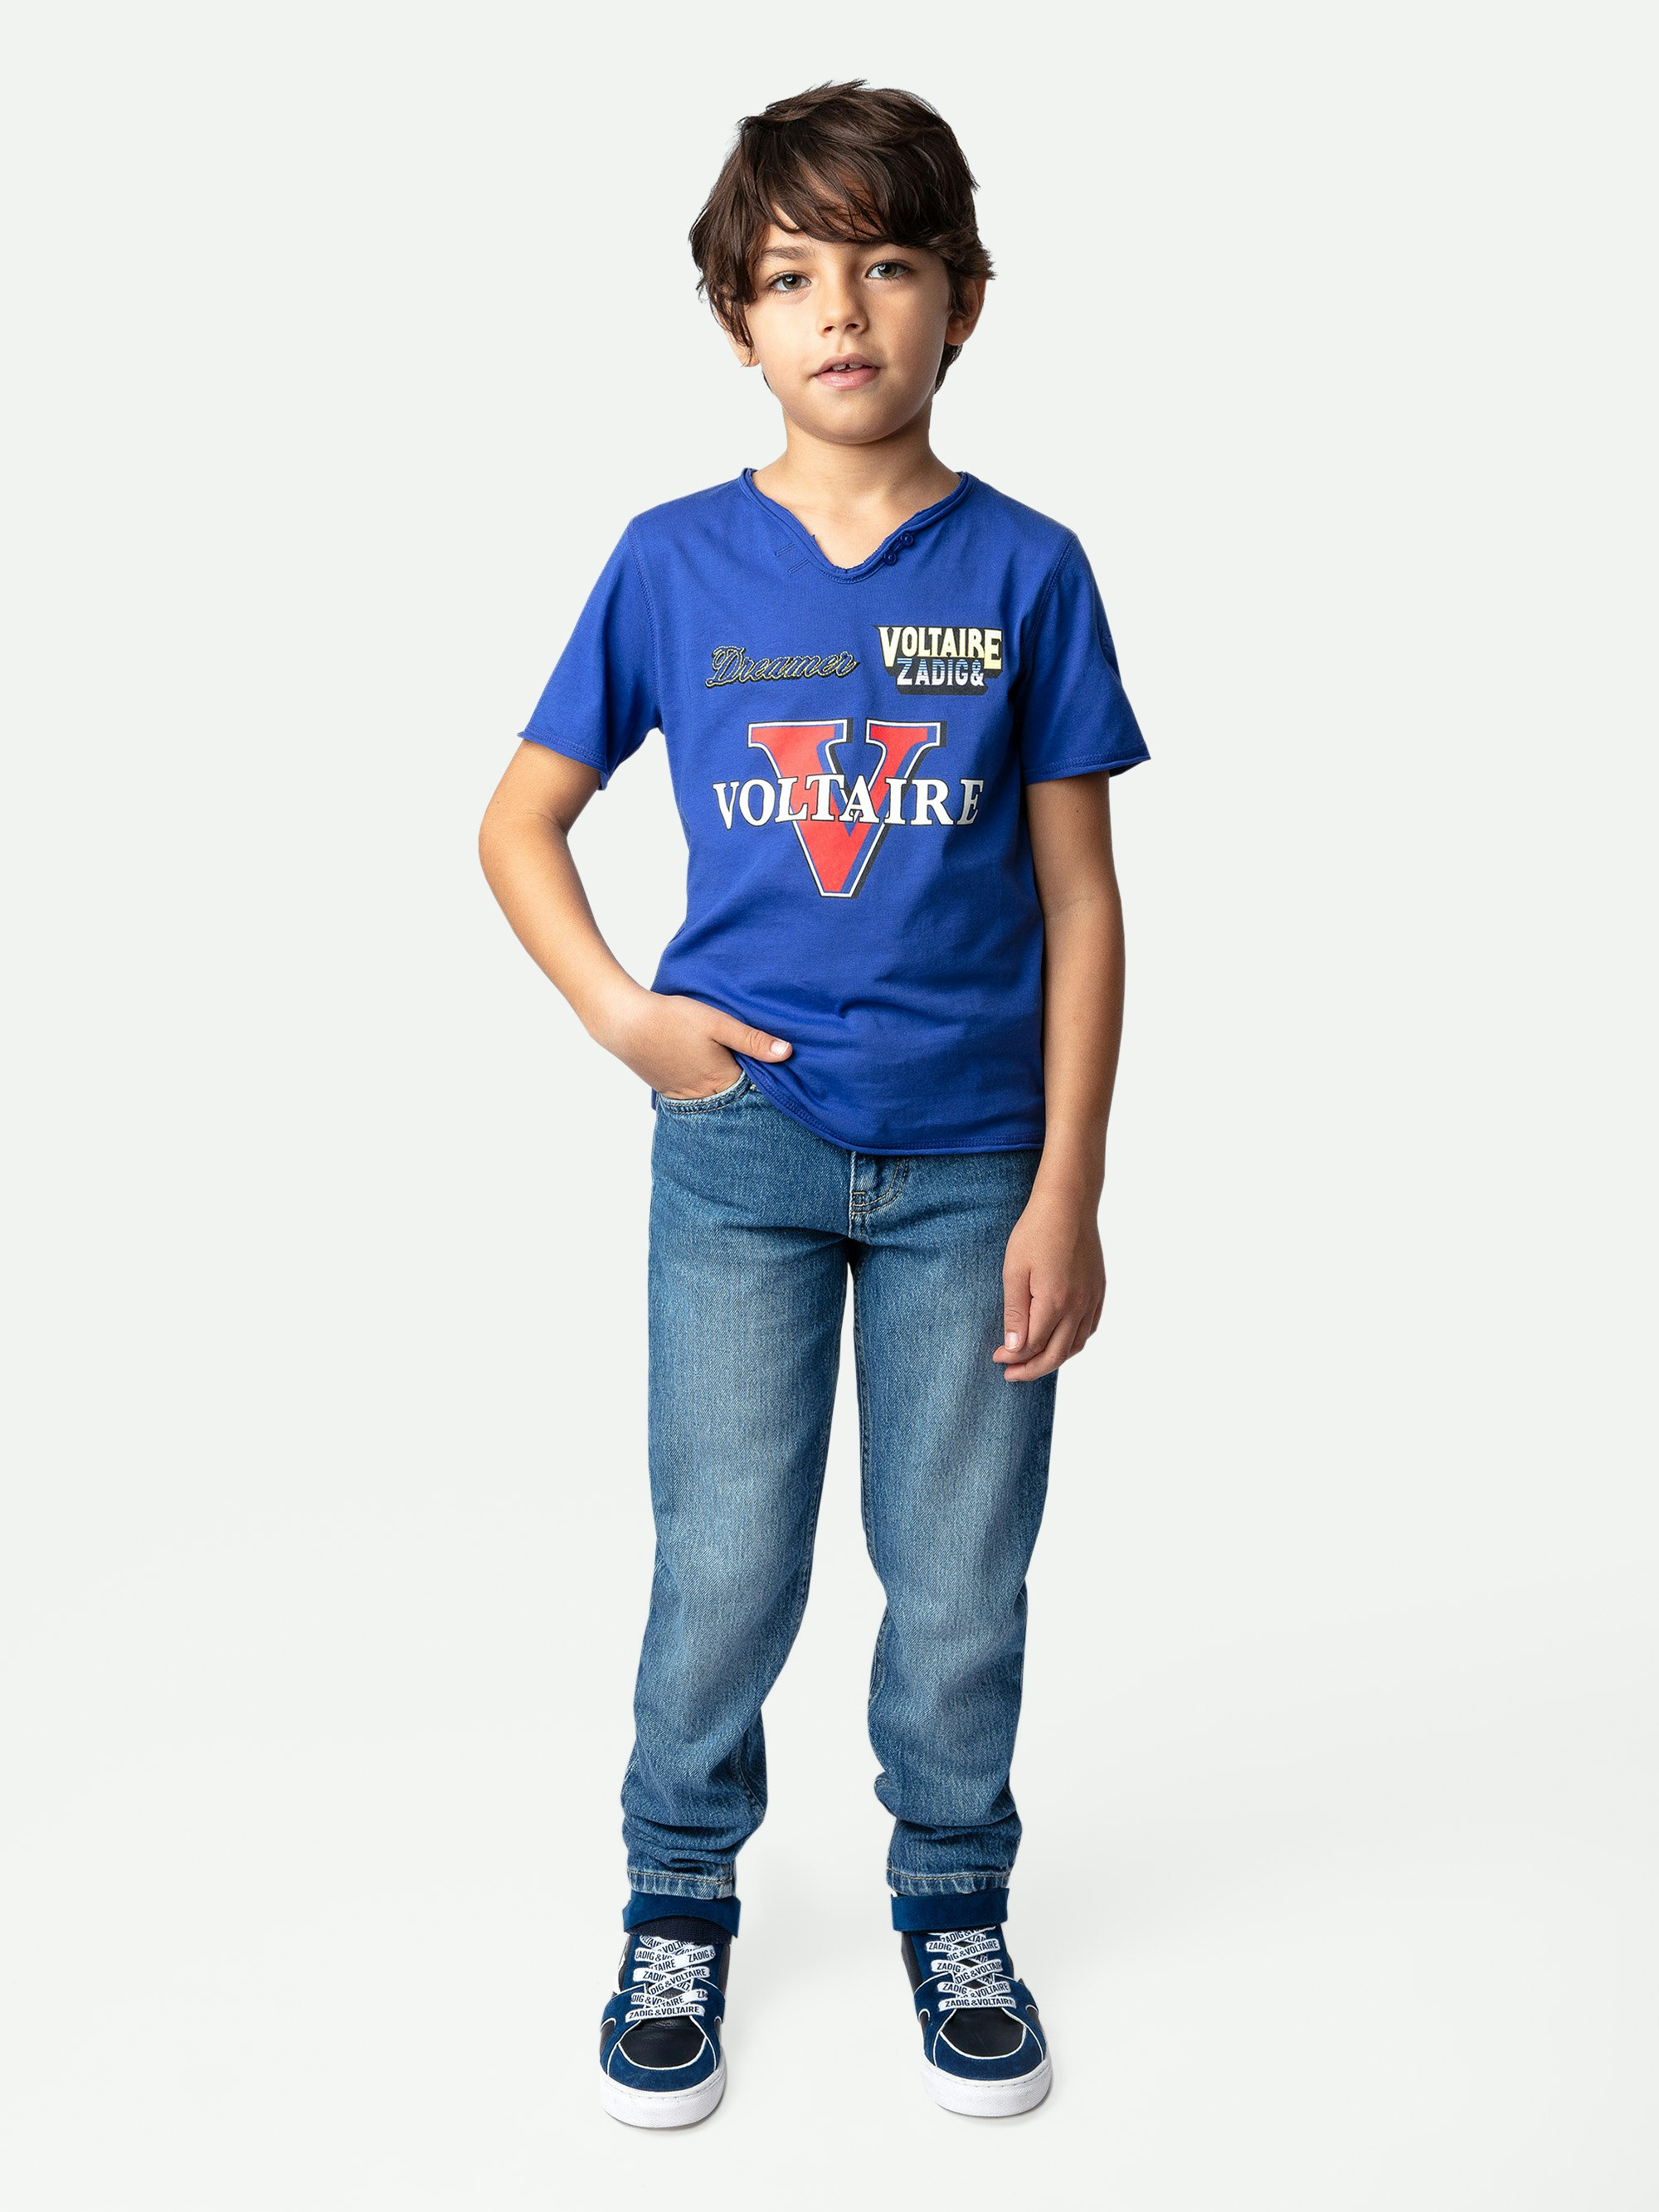 T-Shirt Boxer für Jungen - Blaues Jungen-T-Shirt mit kurzen Ärmeln aus Baumwolljersey mit Illustrationen und Stickereien.